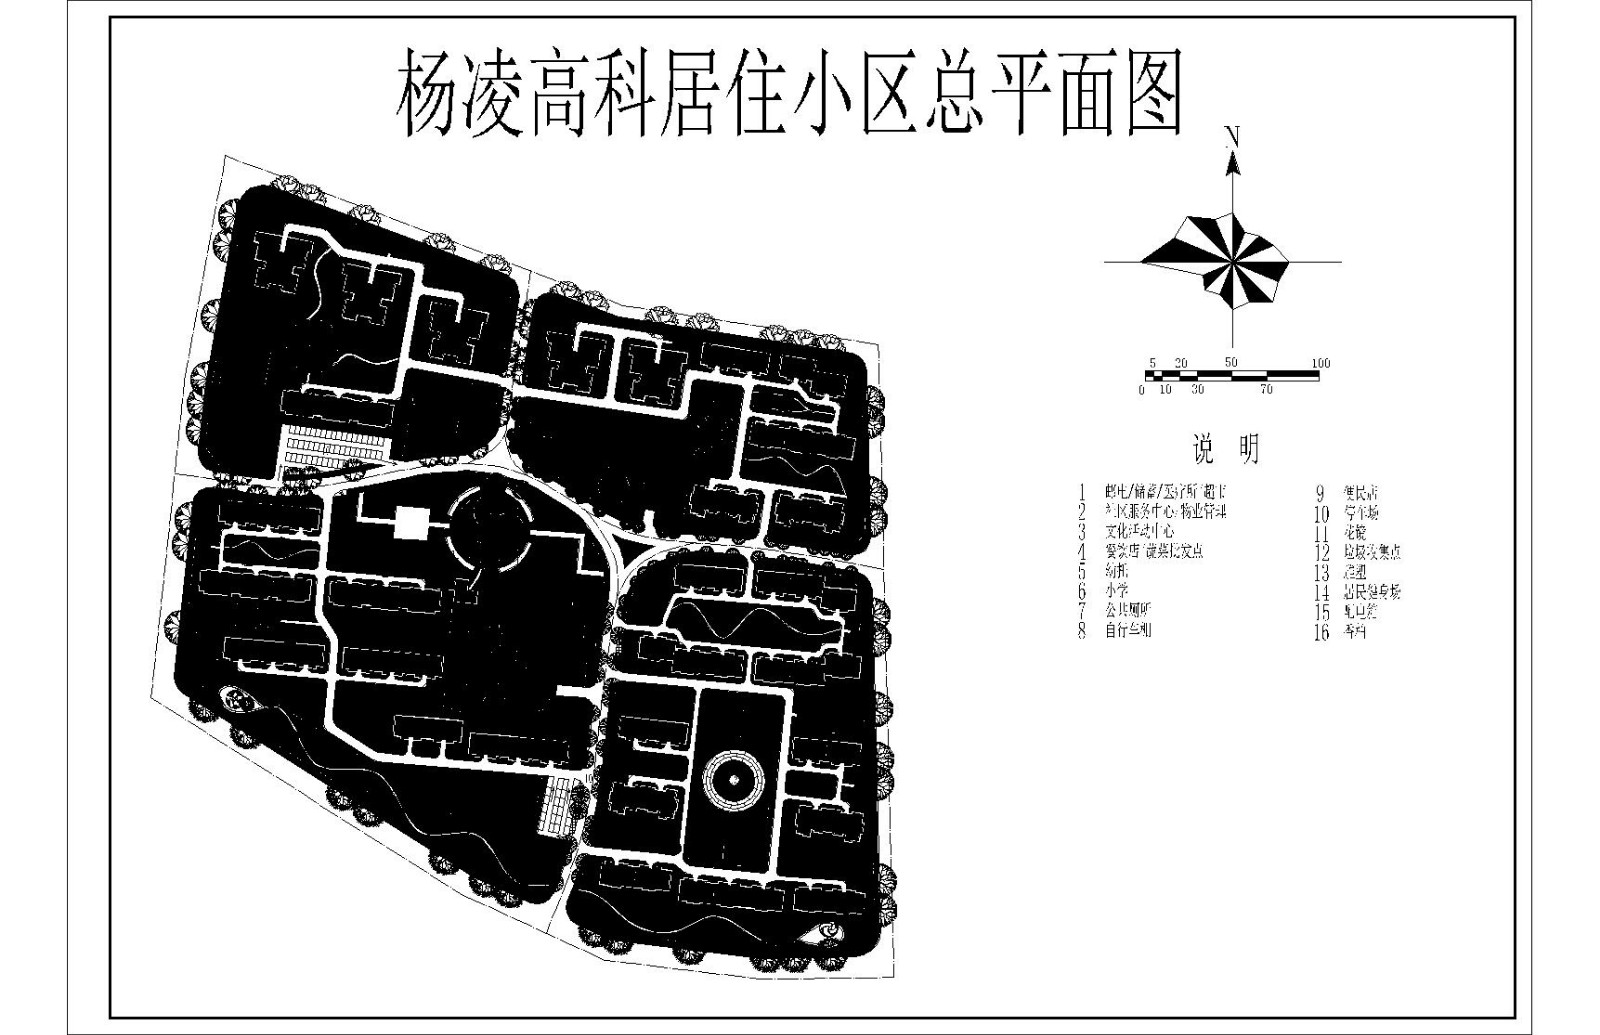 杨凌高科居住小区总规划图